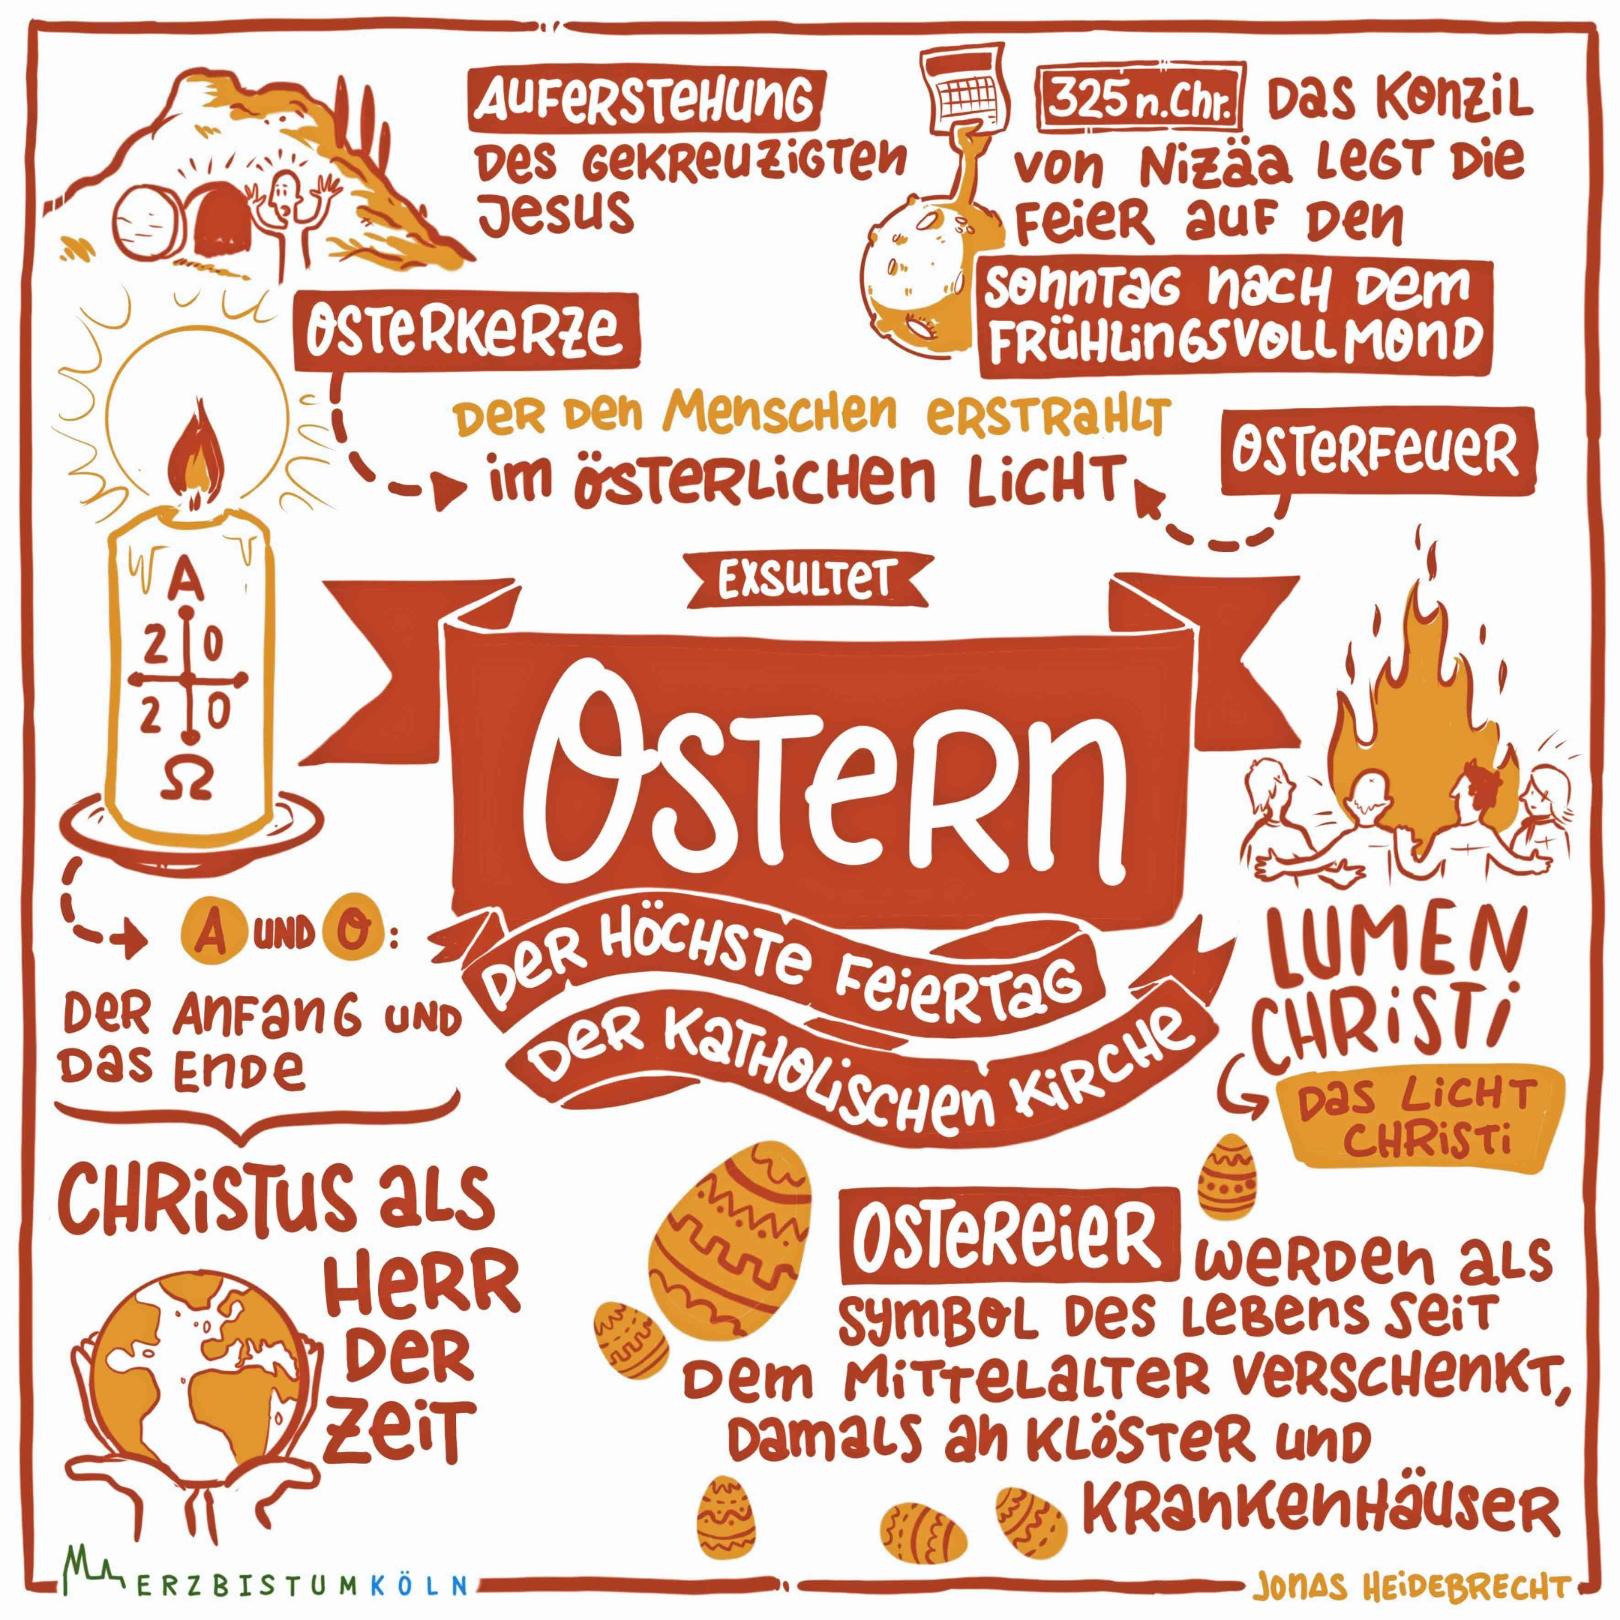 Ostern erklärt (c) Jonas Heidebrecht (Erzbistum Köln) auf www.pfarrbriefservice.de